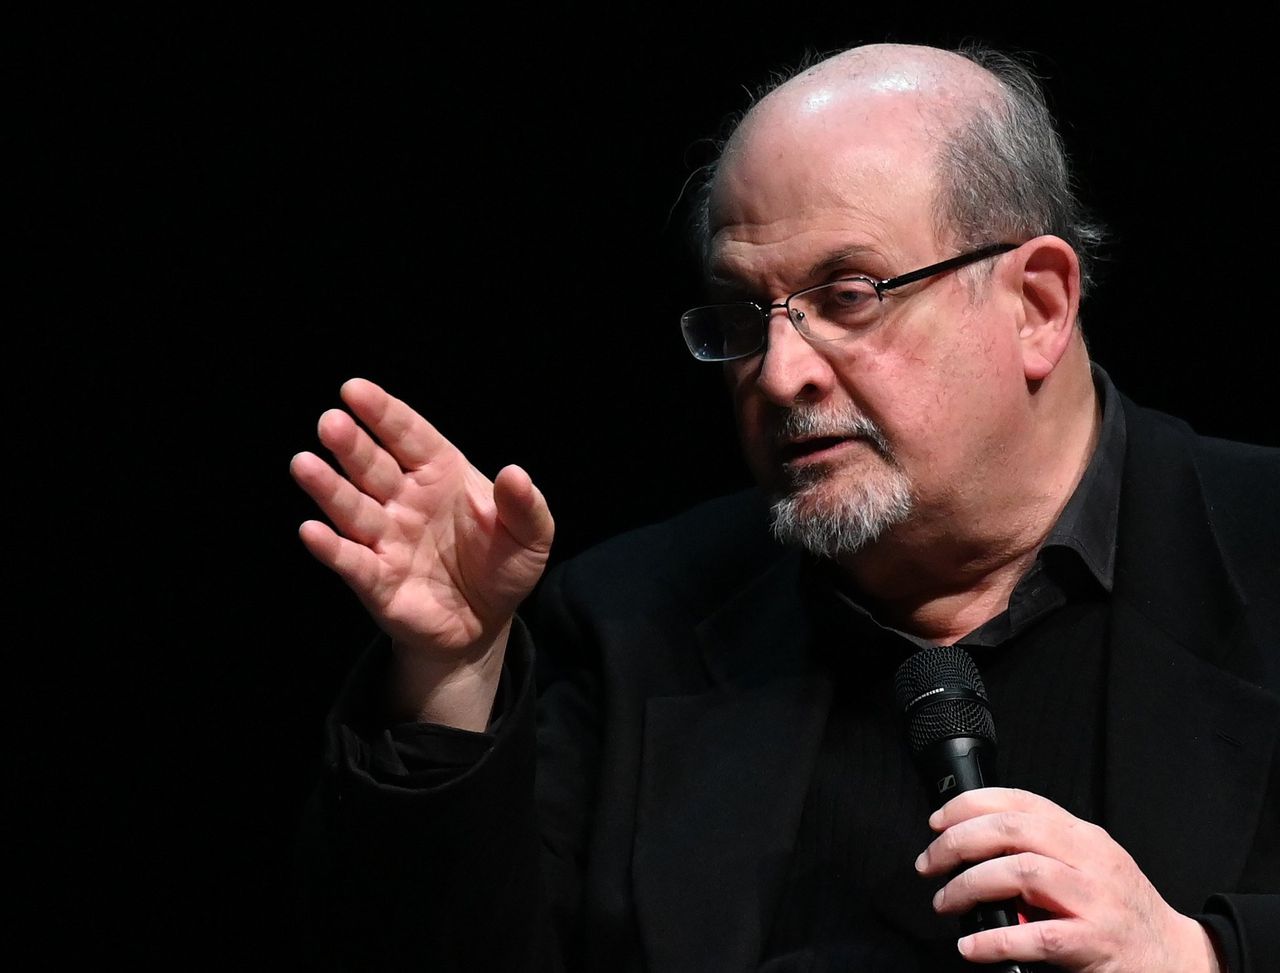 Kan je de nieuwe roman van Salman Rushdie nog onbevangen lezen? 